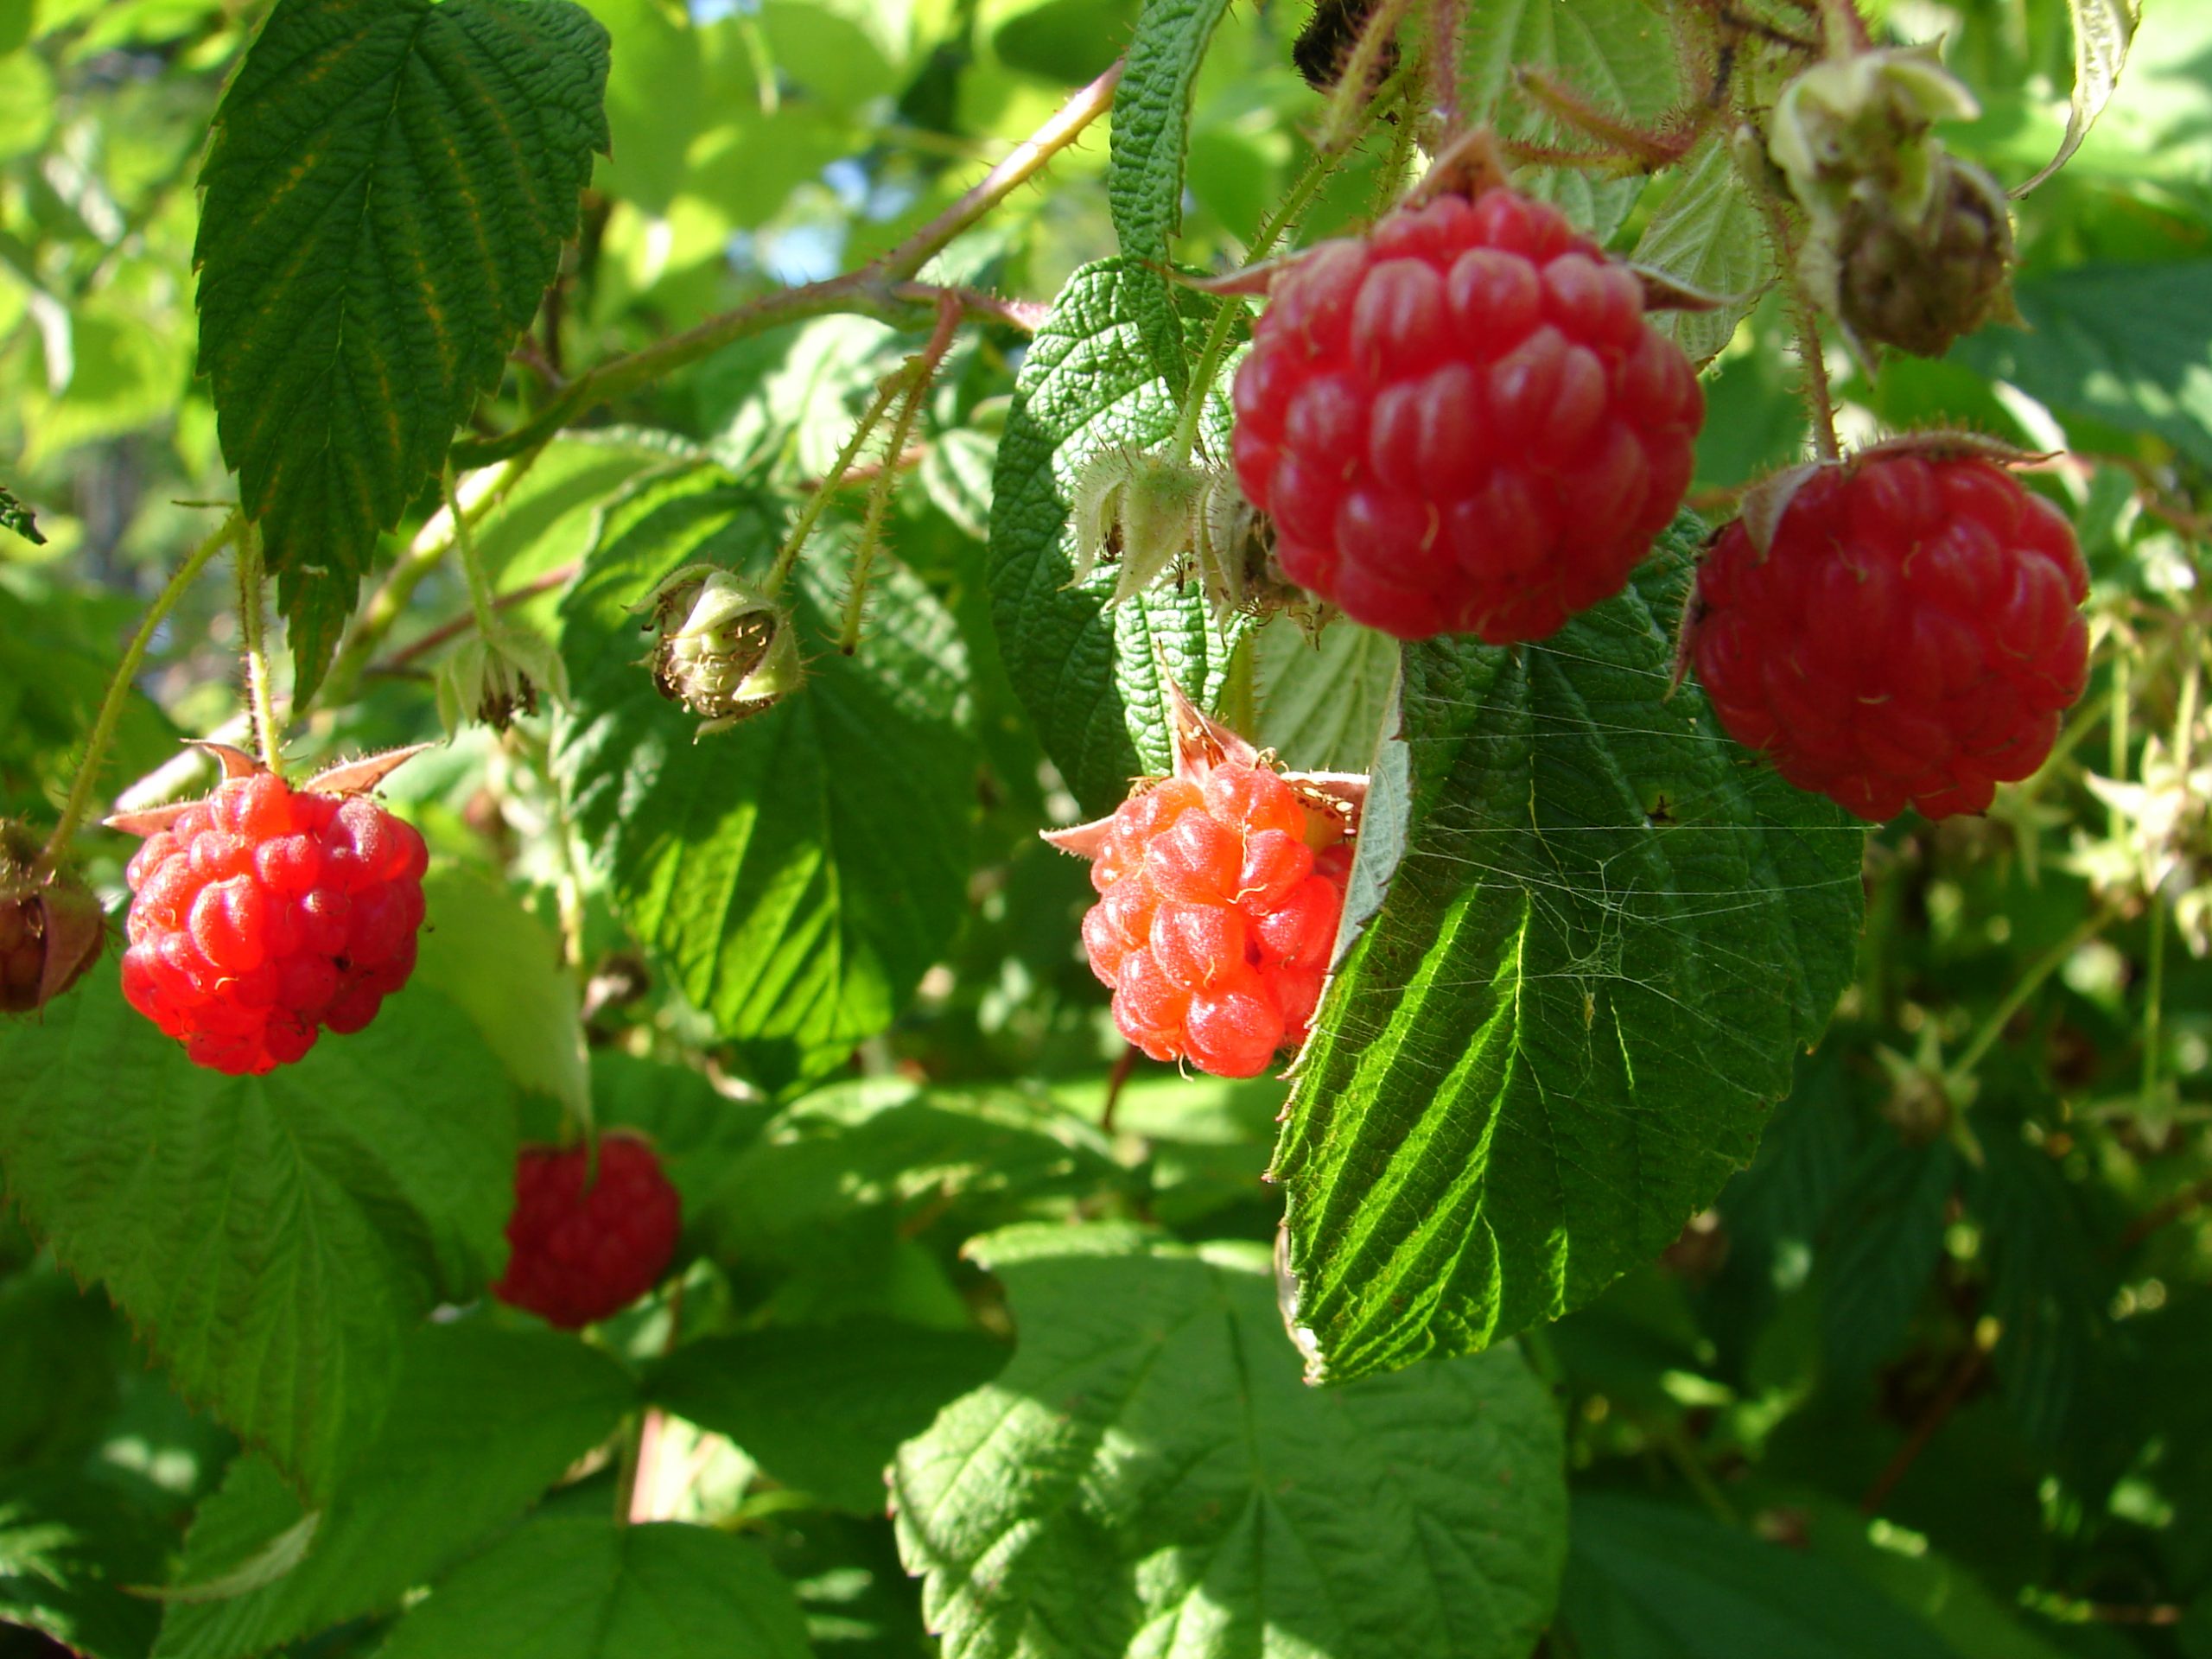 Velvet Red Raspberries (user submitted)